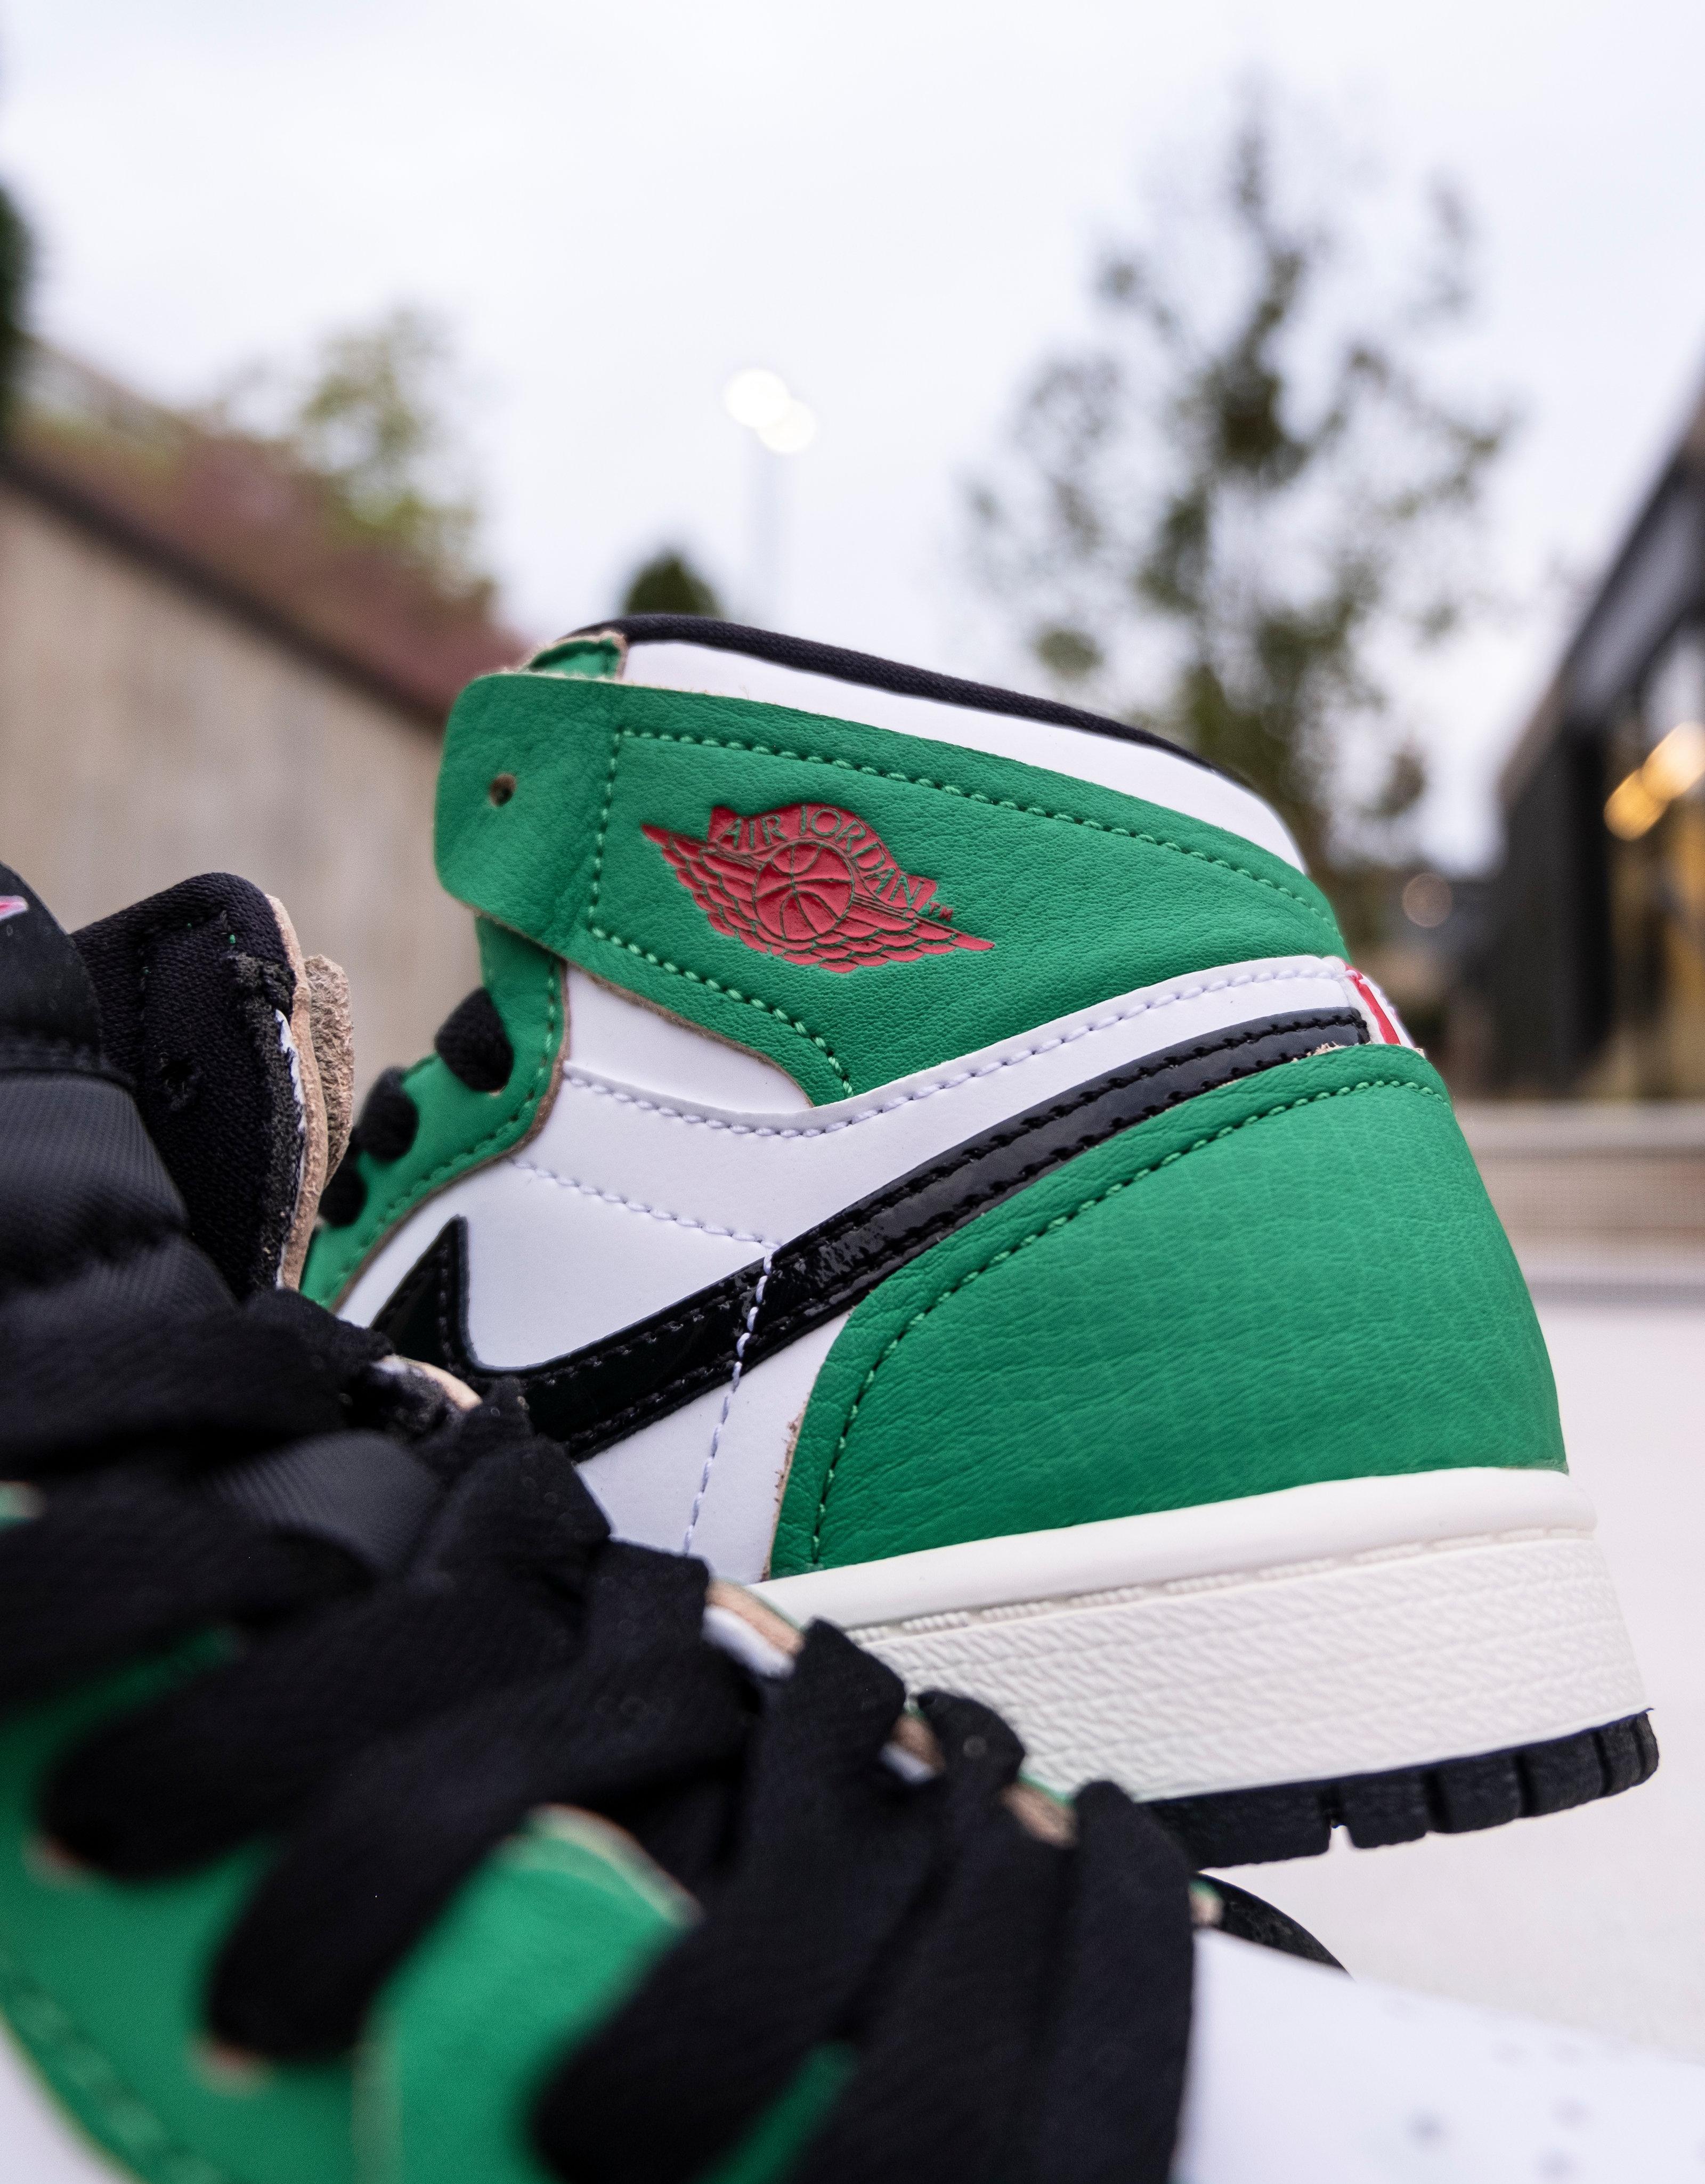 Sneakers Release – Jordan 1 Retro High OG “Pine Green